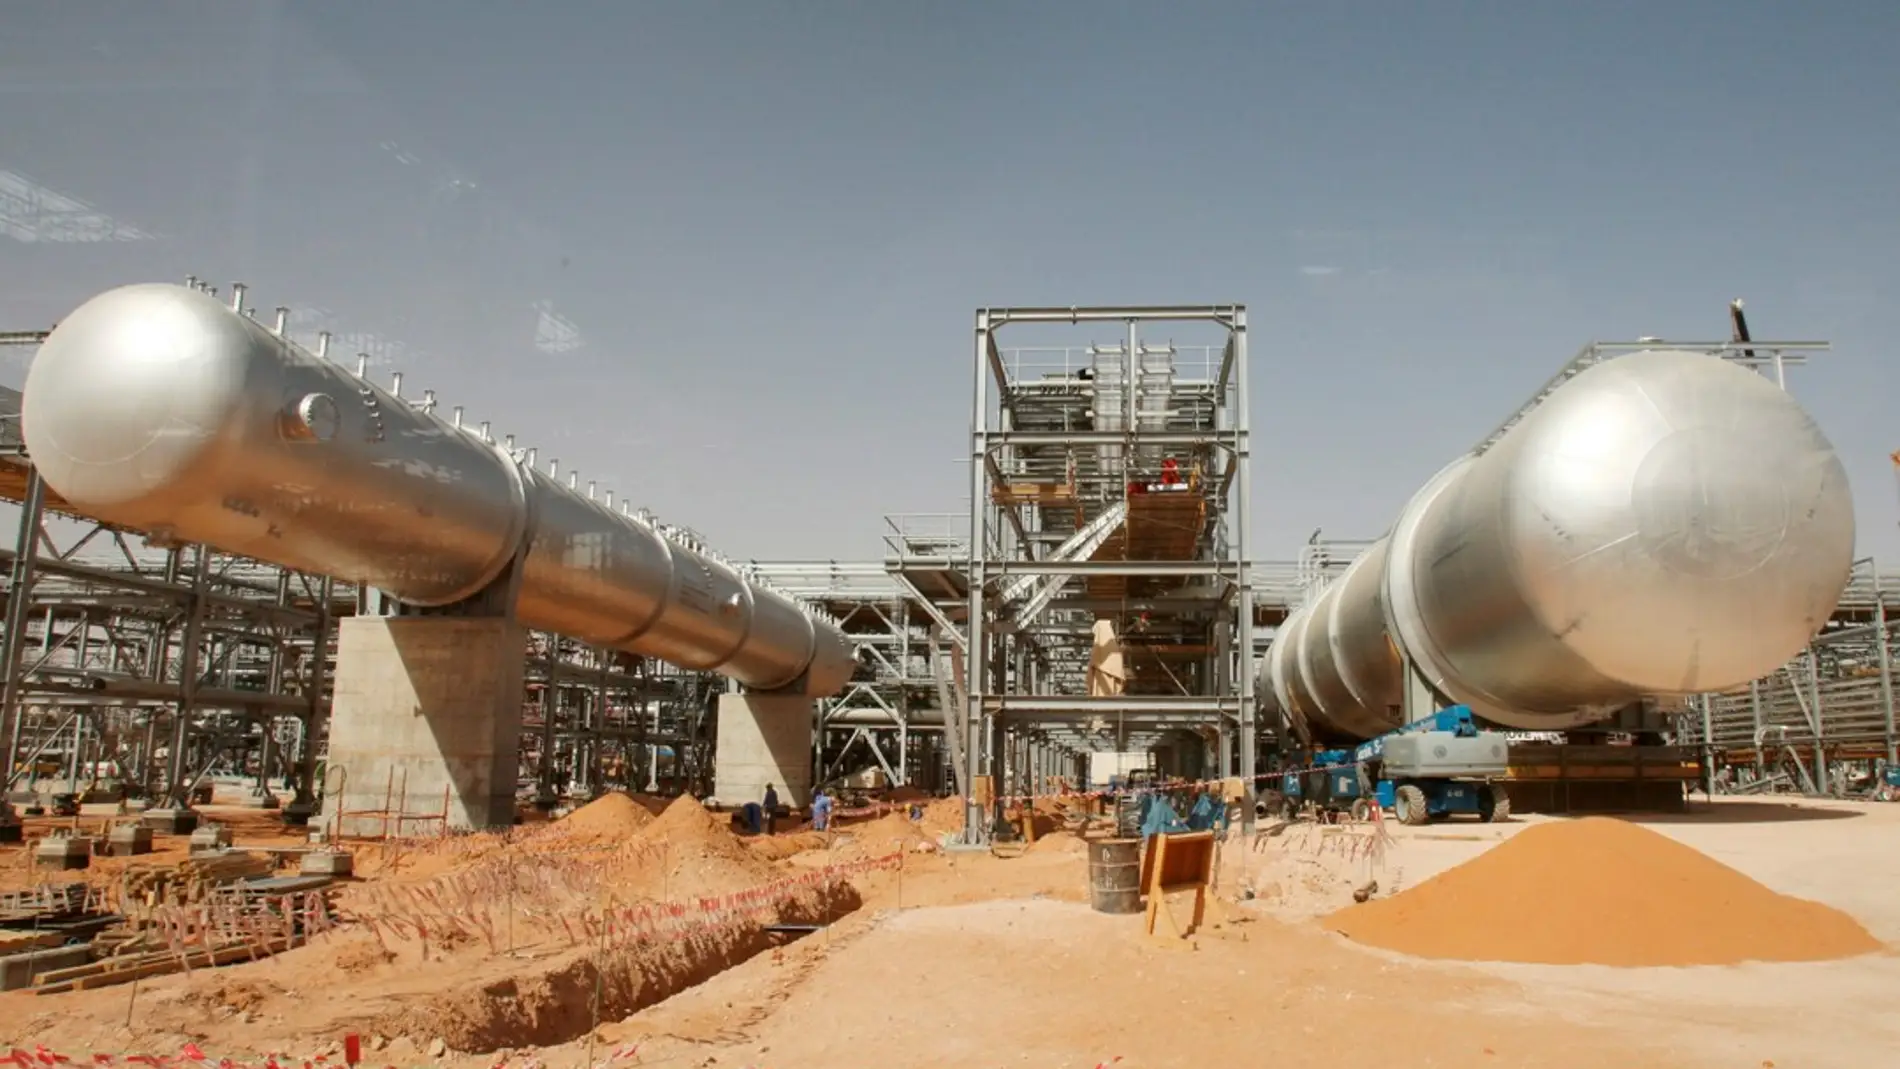 Imagen de archivo de las instalaciones de una planta petrolífera en el desierto, a unos 160 kilómetros de Riad (Arabia Saudí)